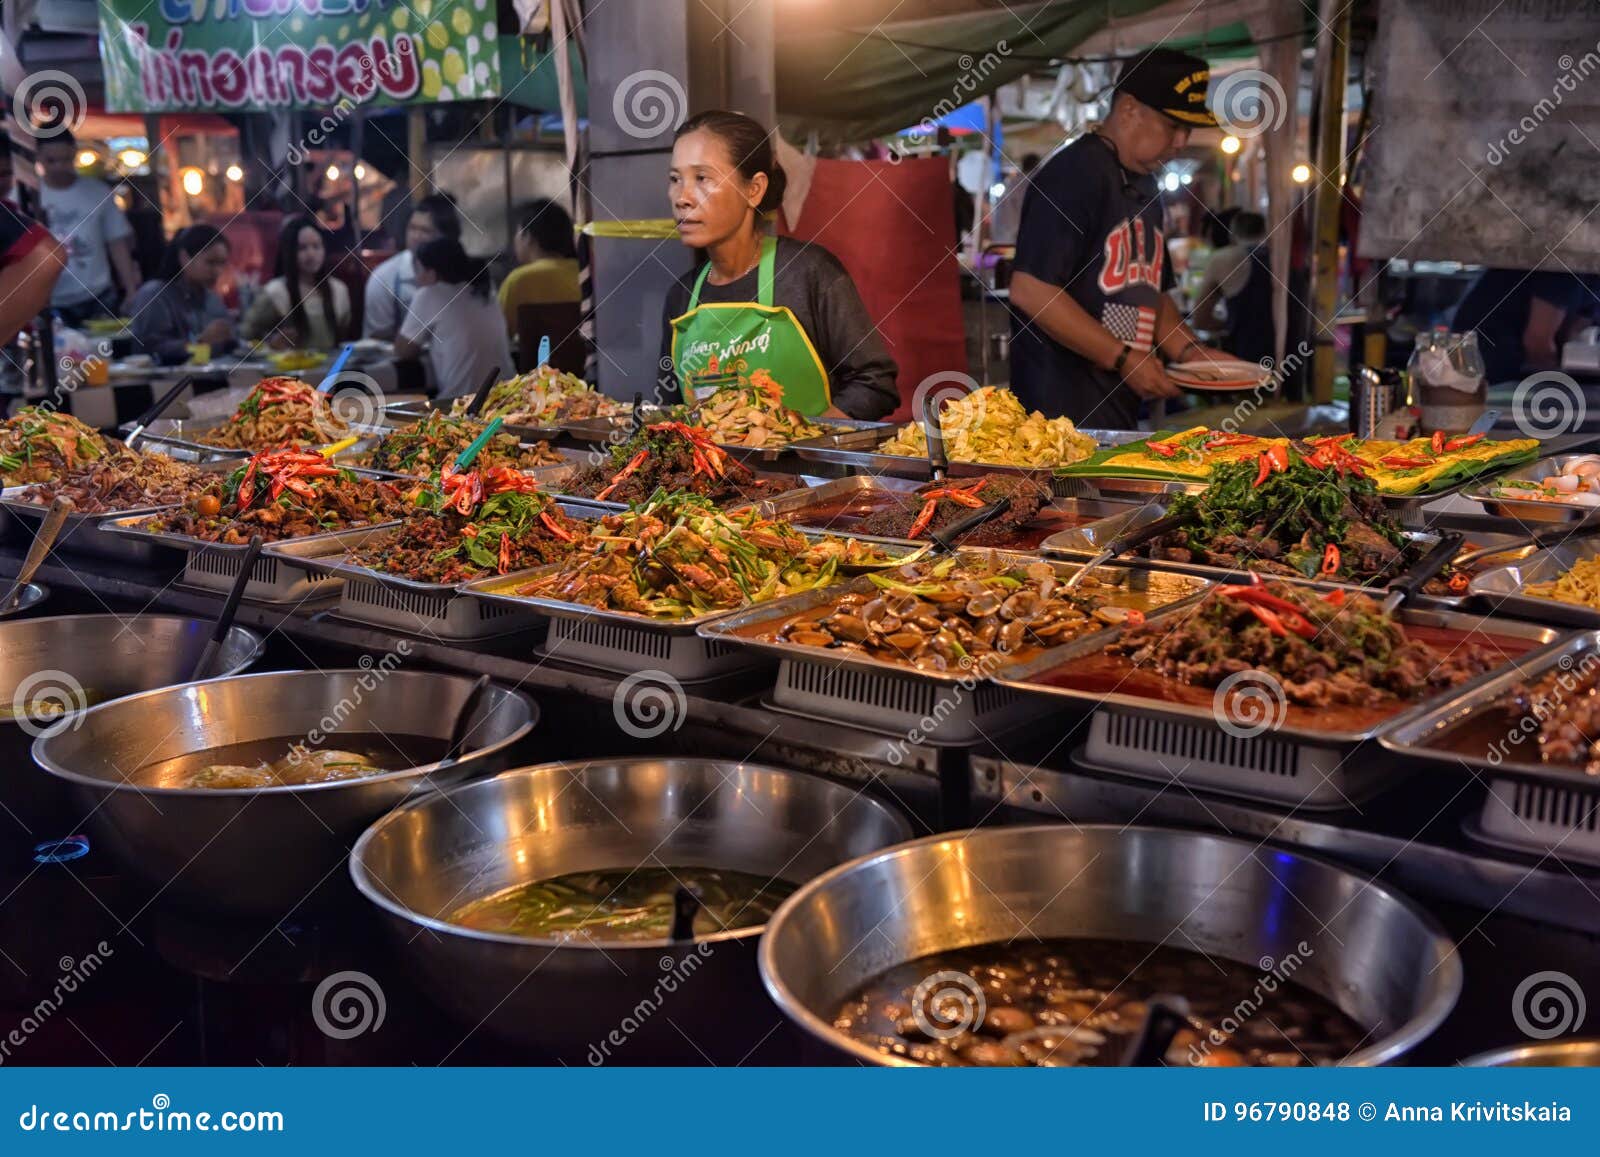 Тайланд можно ехать. Стрит фуд Тайланд. Тай Паттайя. Ночной рынок Пратамнак Паттайя. Бангкок стрит фуд.